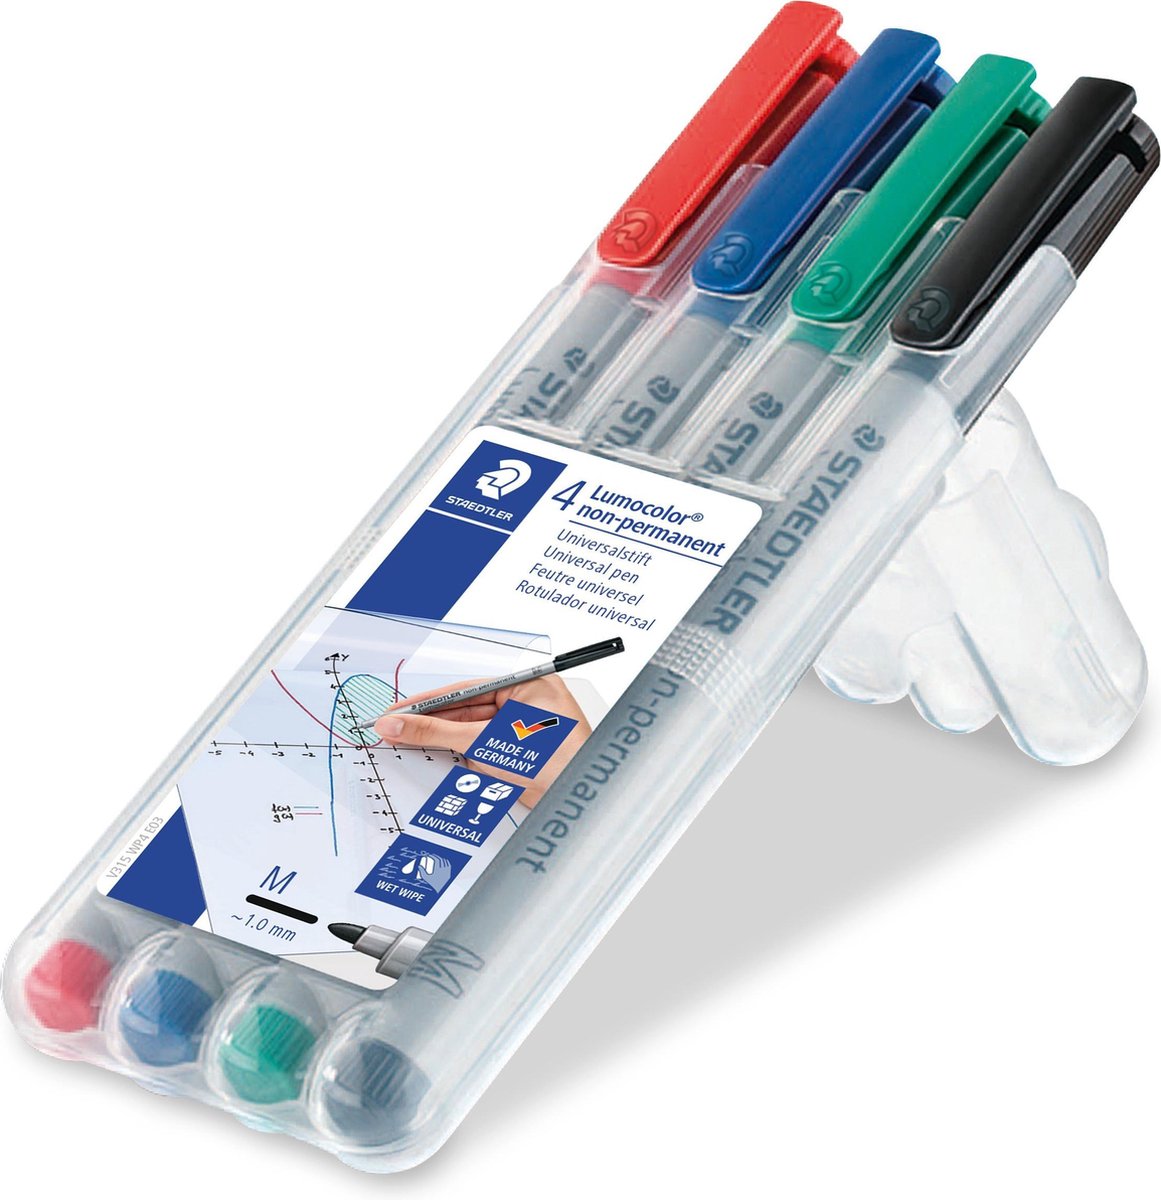 STAEDTLER Lumocolor M non-permanent pen - Box 4 kleuren - STAEDTLER